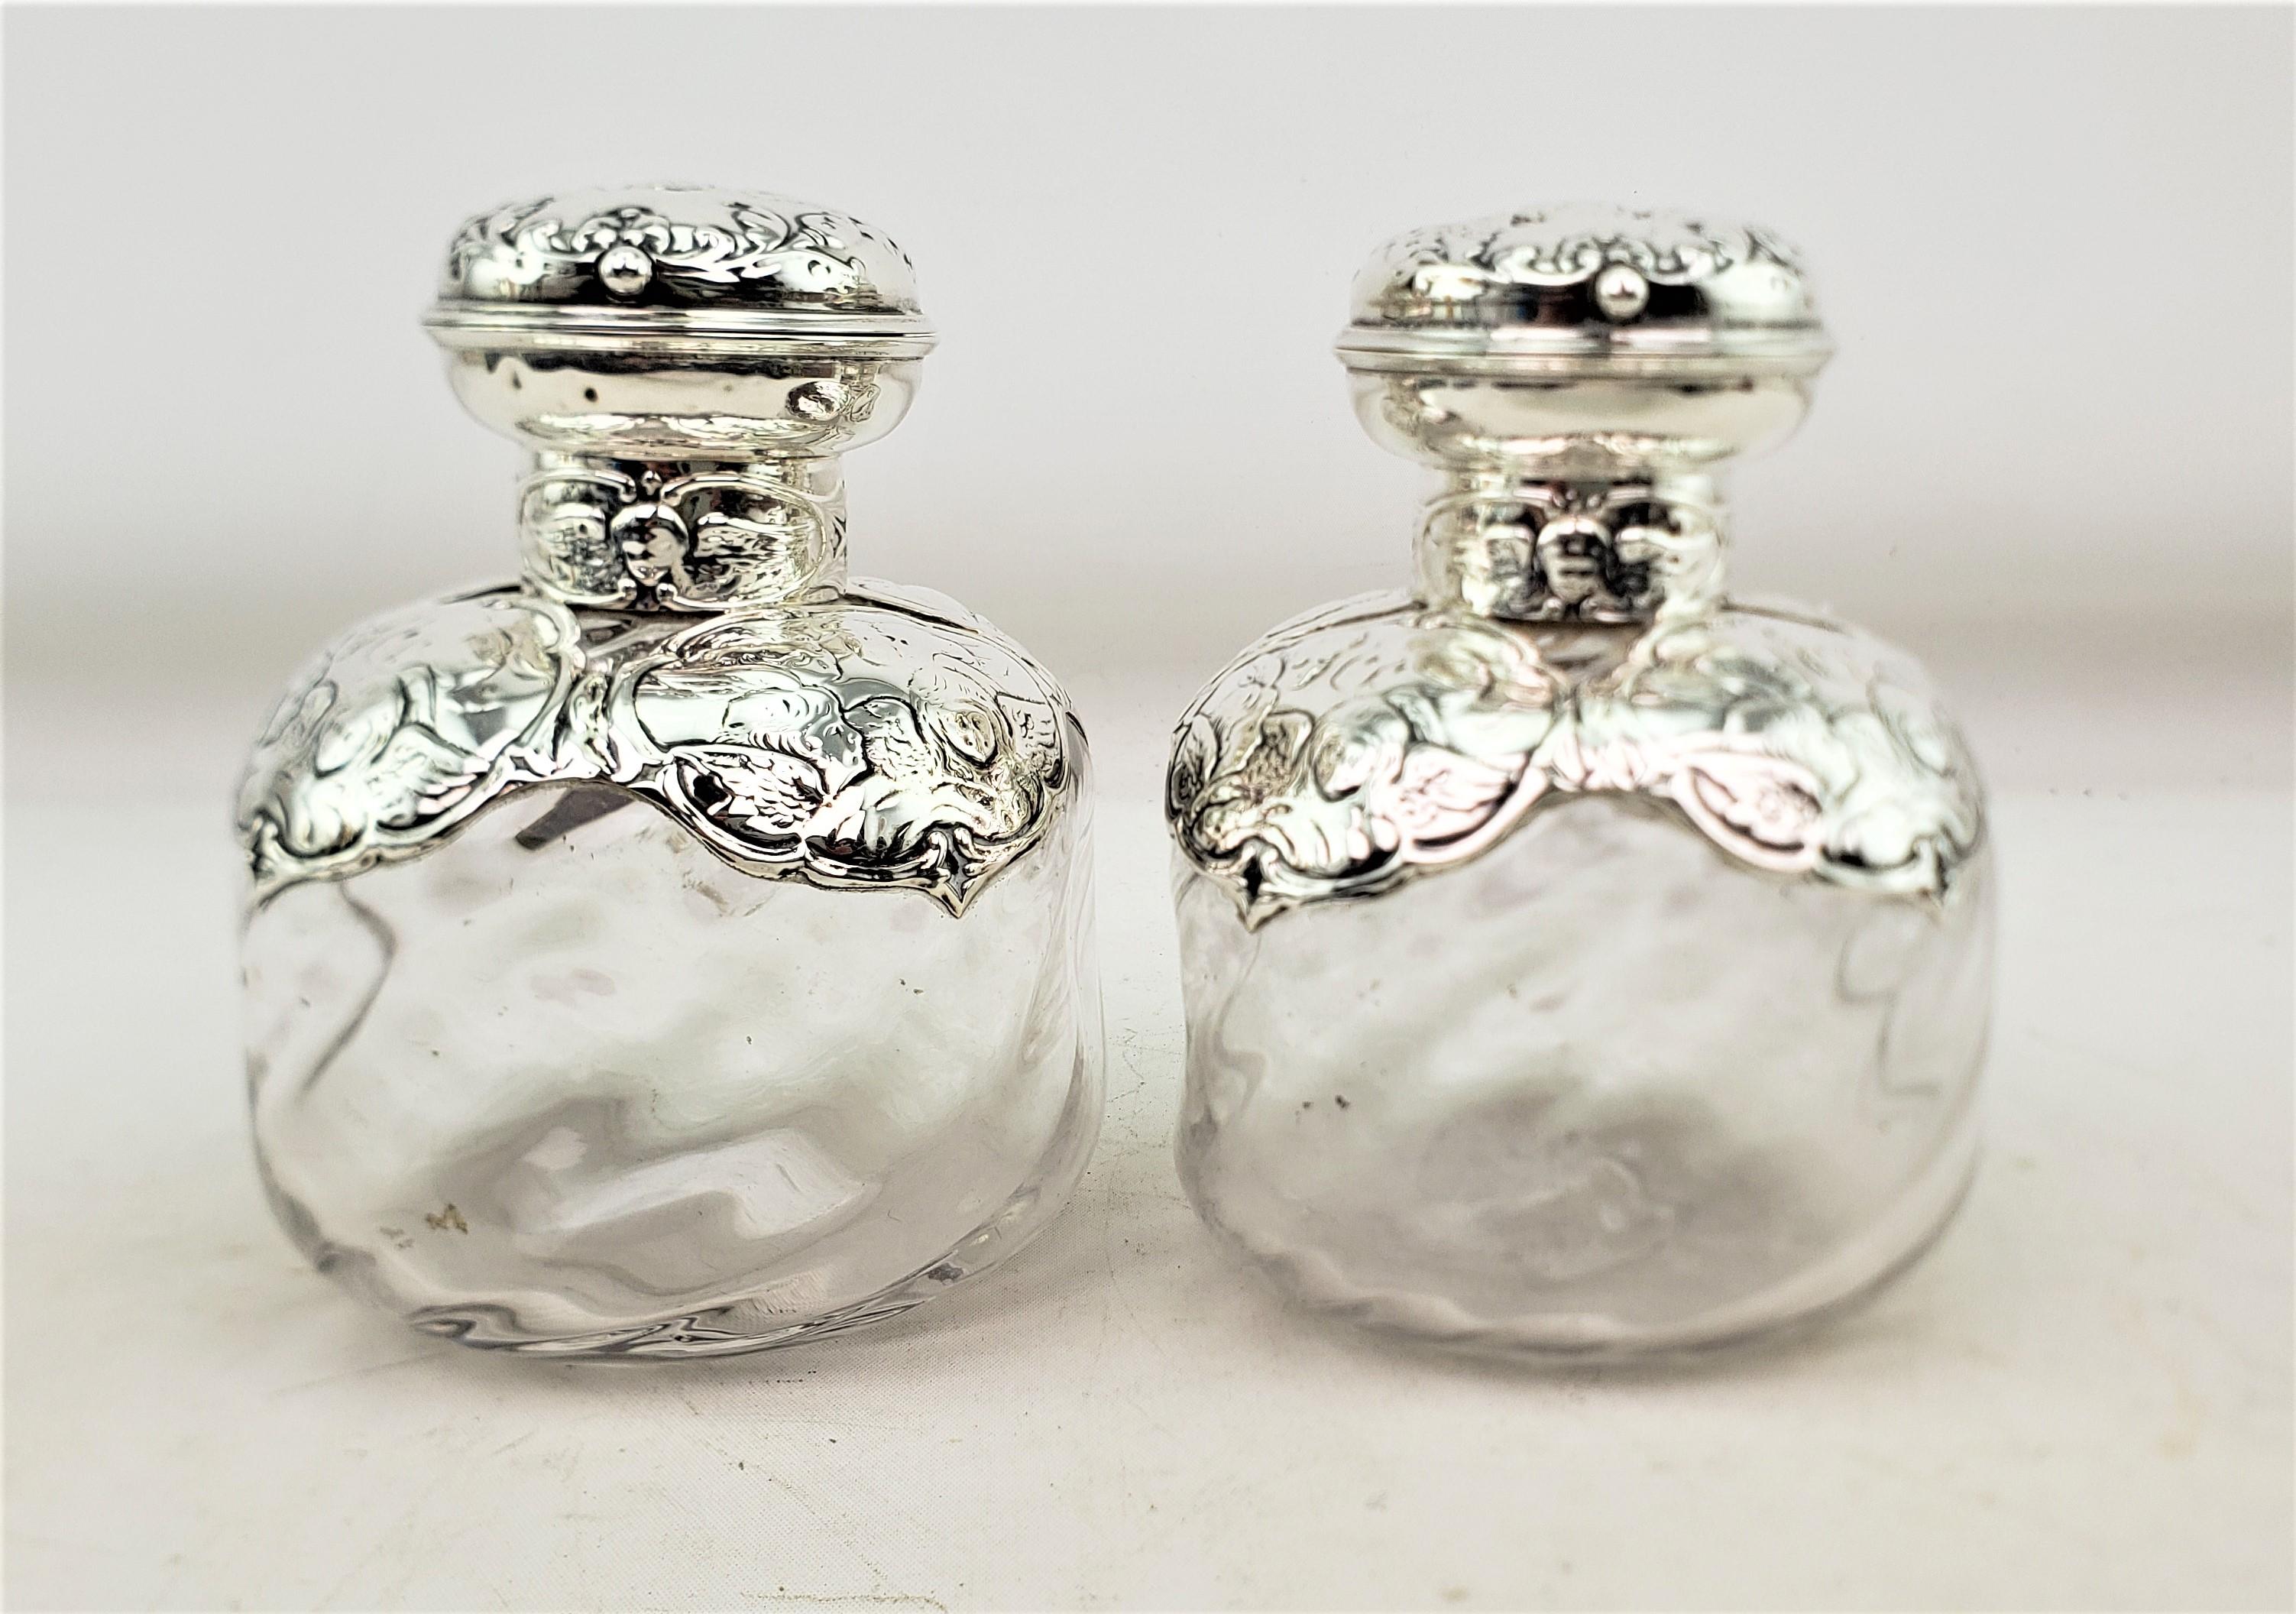 Cette grande paire de flacons de parfum anciens a été fabriquée par les célèbres orfèvres William Comyns & Sons Ltd. d'Angleterre. Elle date d'environ 1880 et a été réalisée dans le style victorien de l'époque. Les bouteilles sont composées de verre